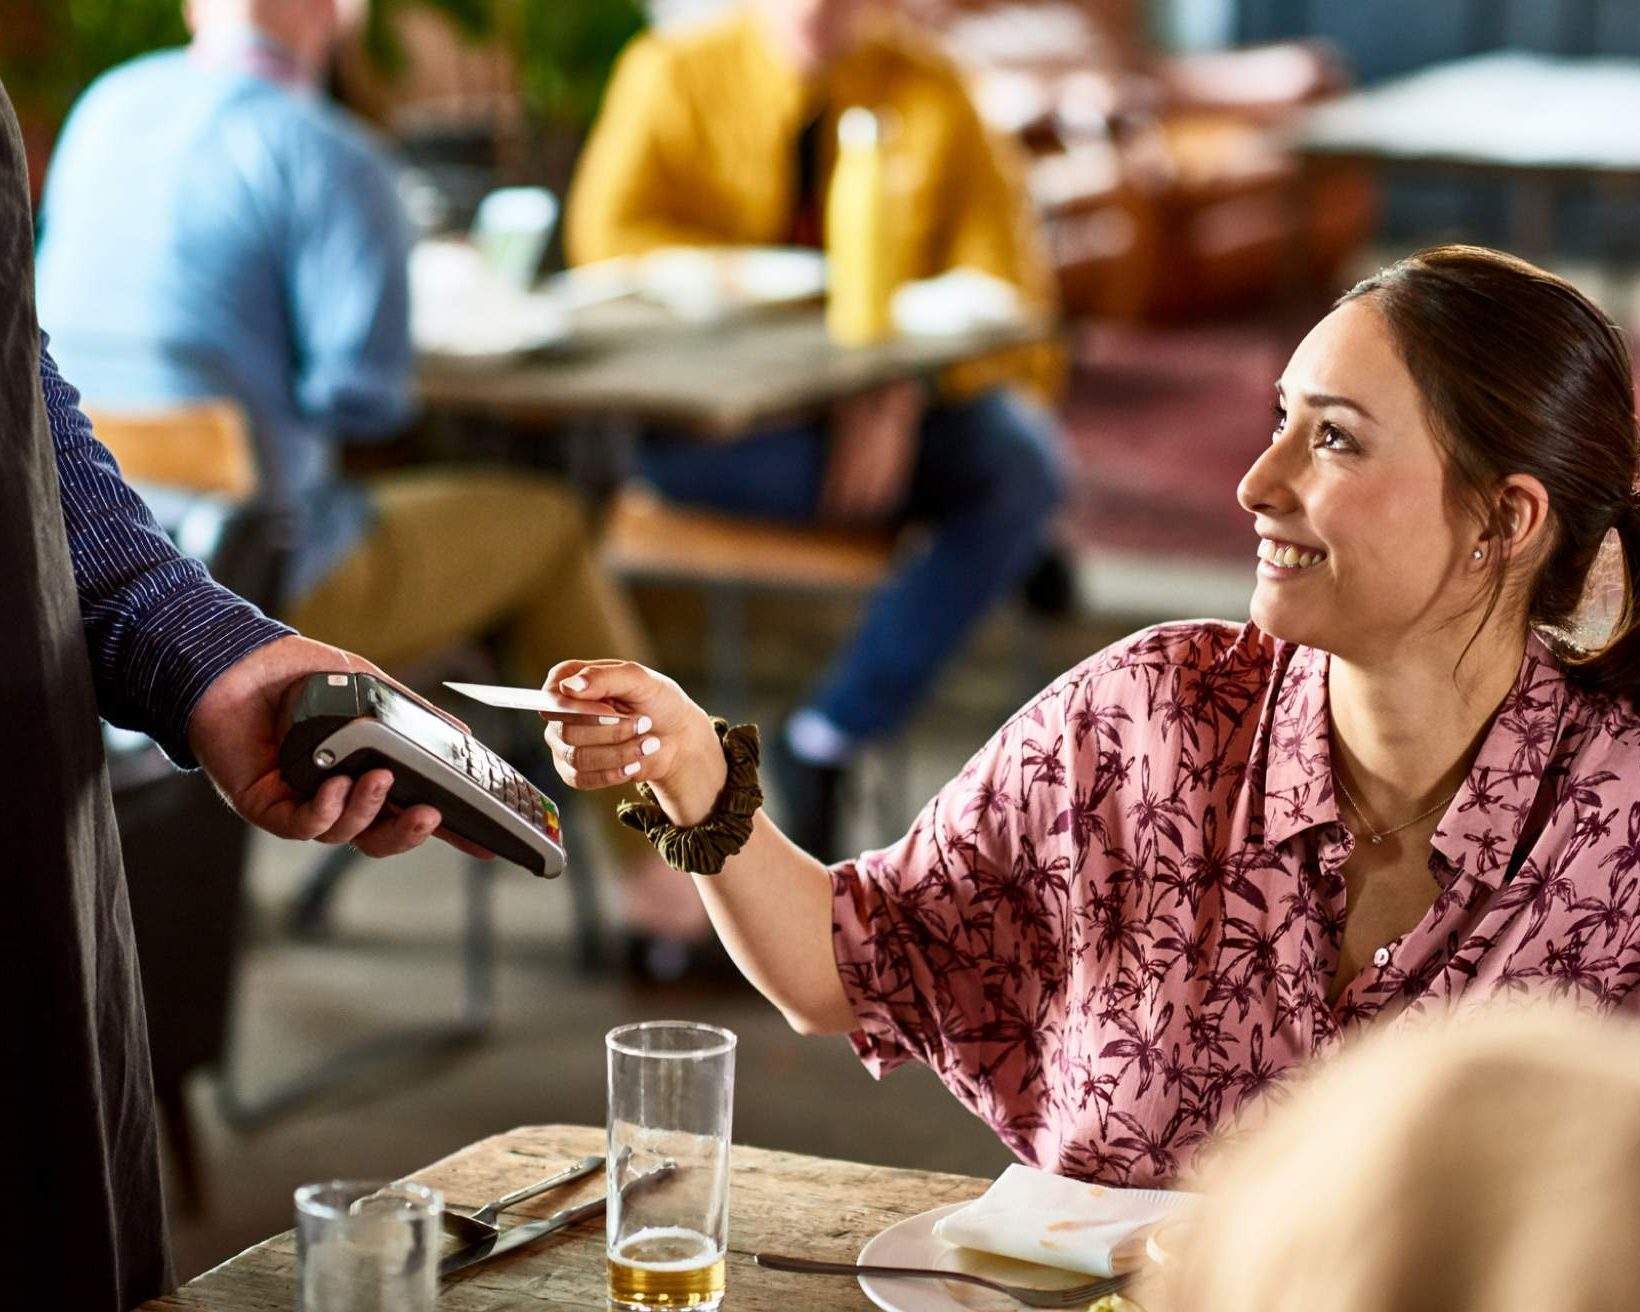 In dieser Abbildung sind ein Gast und ein Kellner in einem Restaurant zu sehen. Der Kellner hält ein Gerät mit einem Zahlungssystem und der Gast legt eine Karte auf das Gerät.